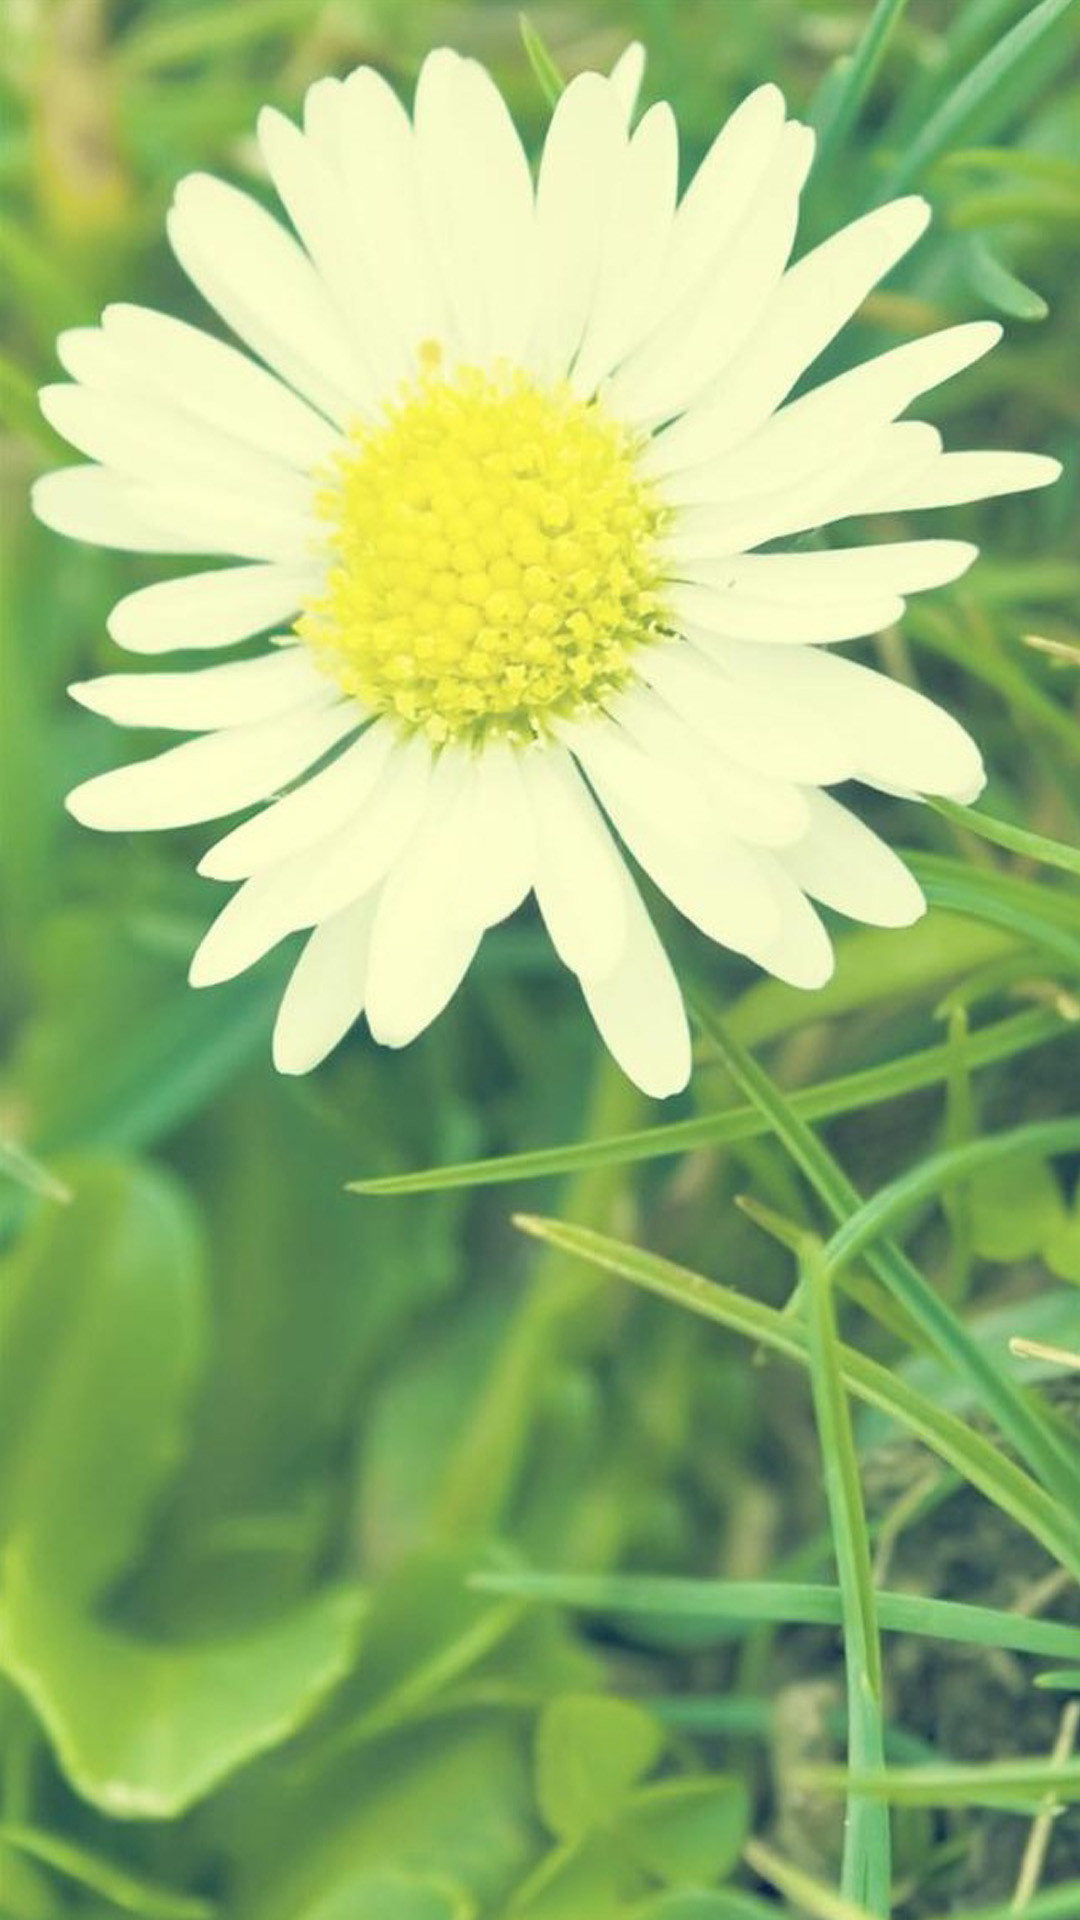 1080x1920 Wallpaper backgrounds Â· White Sunshine Daisy Flower #